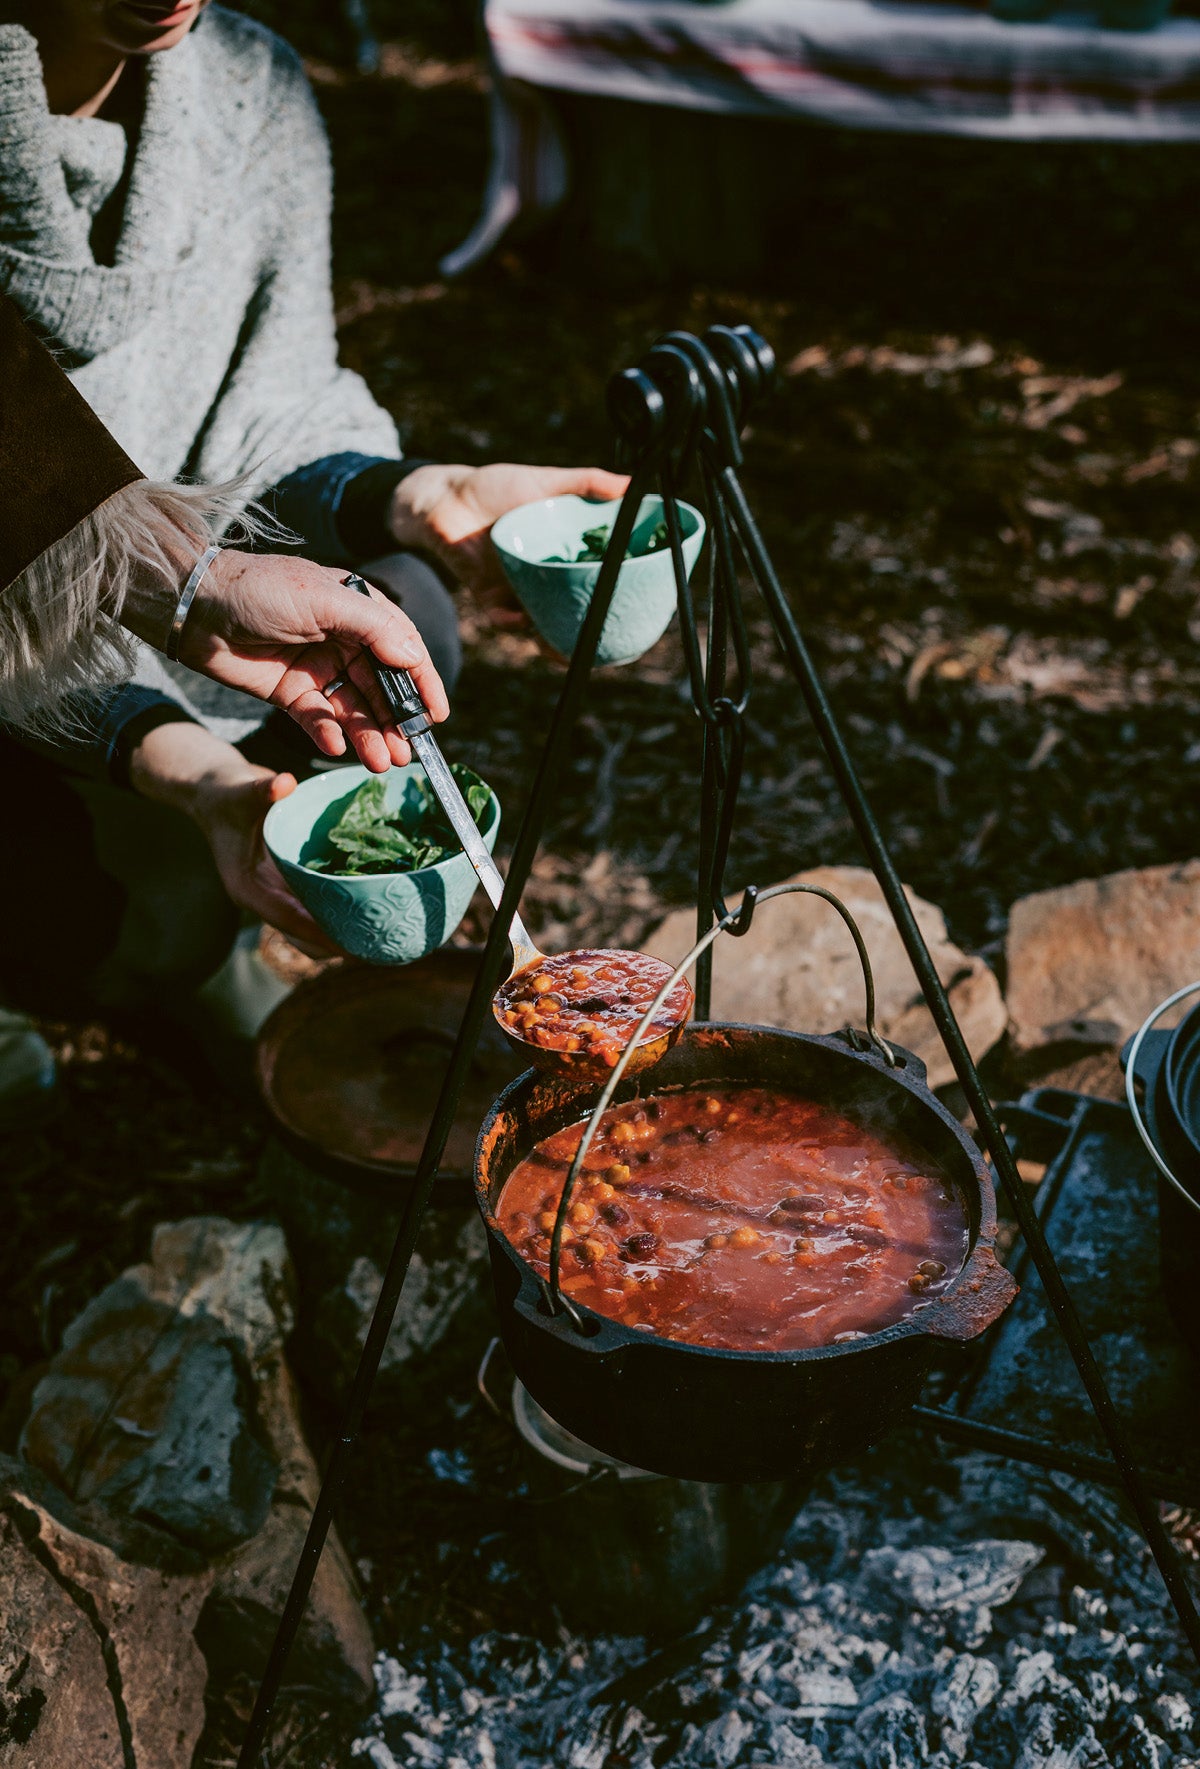 A bean stew cooking over an open fire